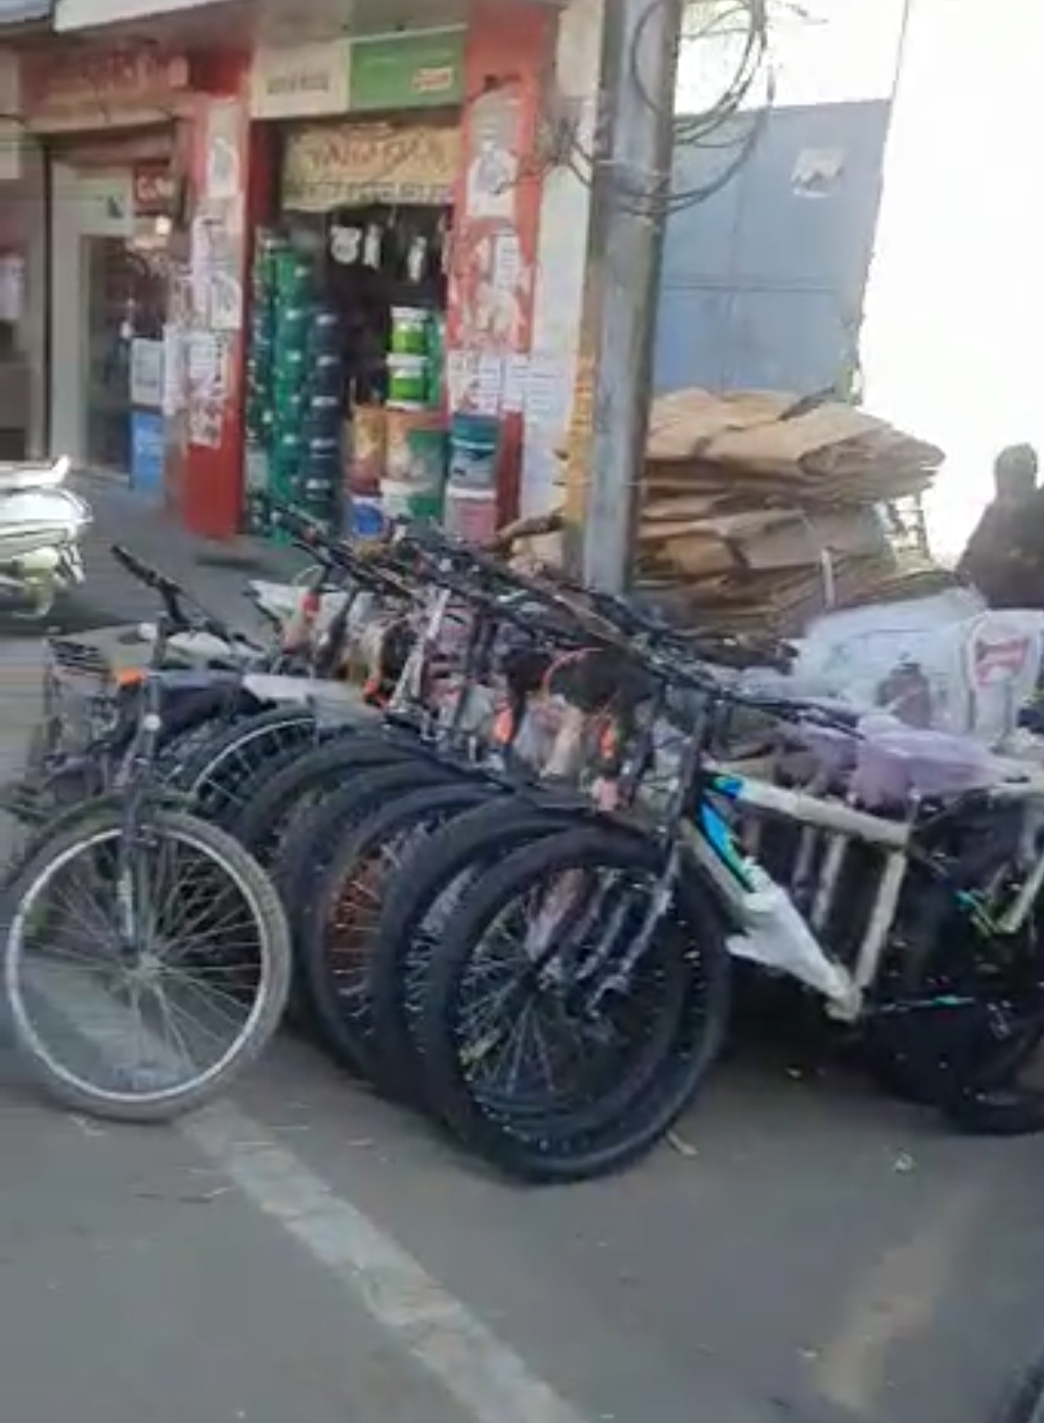 नगर निगम व यातायात पुलिस की अनदेखी के कारण दुकानदारों ने फुटपाथ पर जमाया कब्ज़ा | New India Times